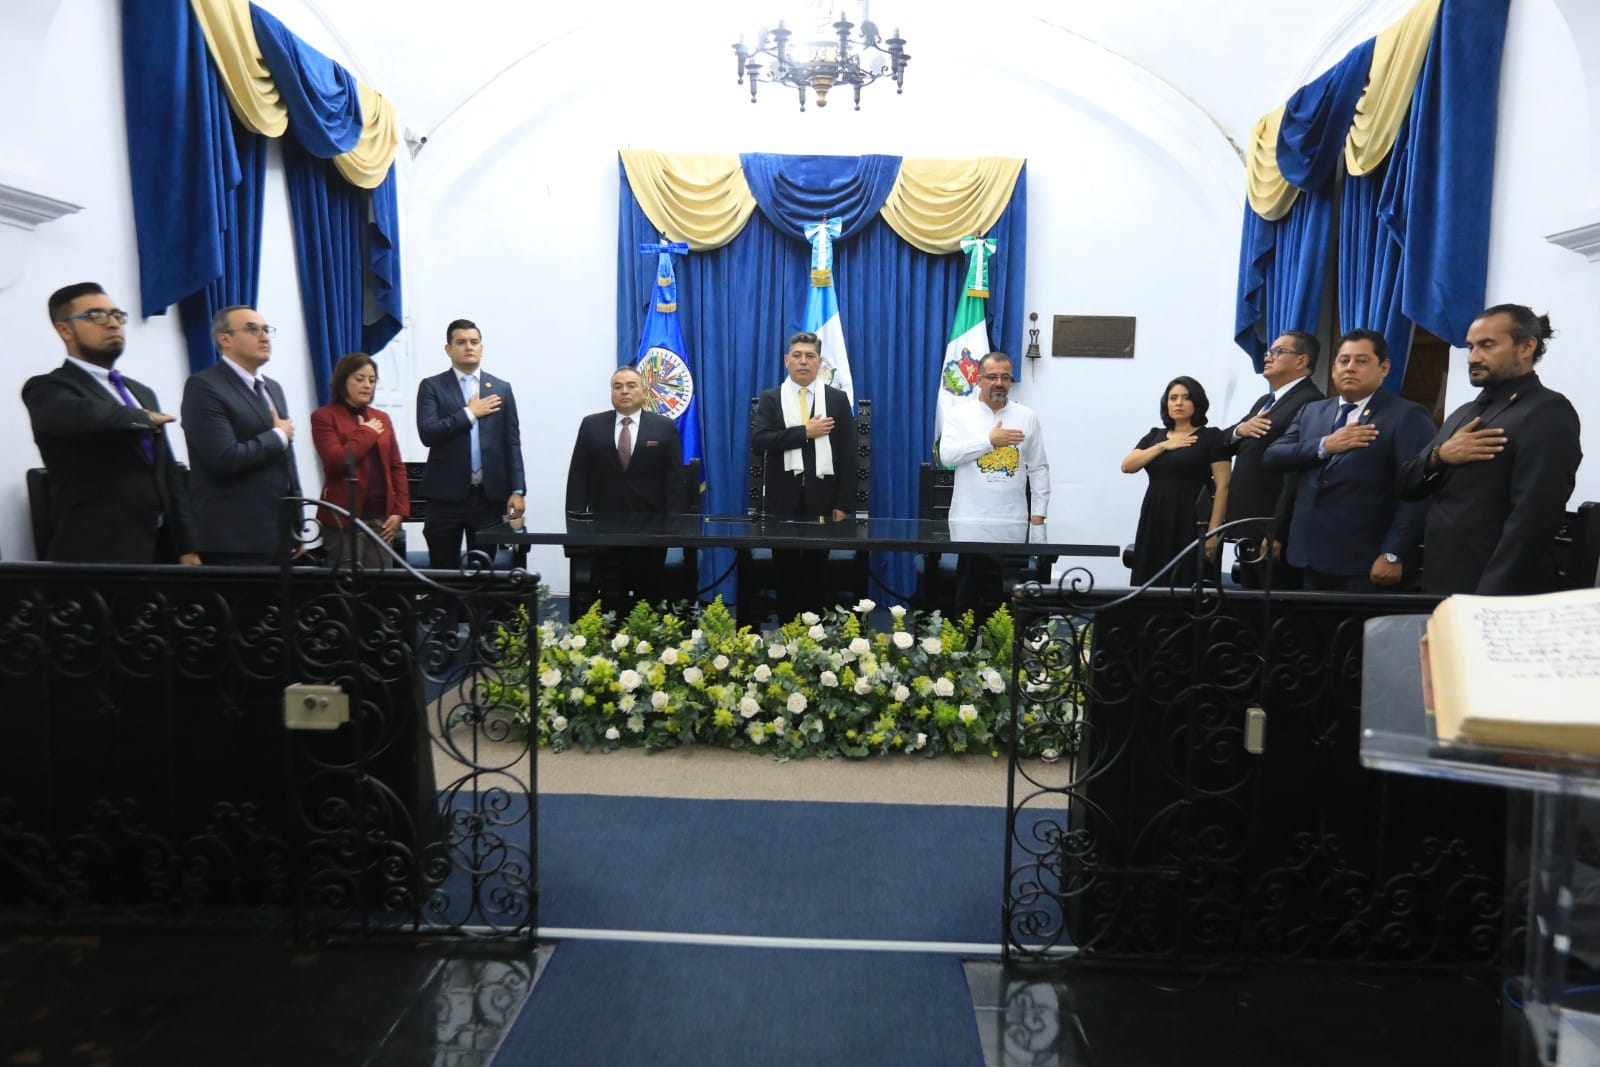 Secretario General Adjunto, Néstor Méndez, recibe la Llave de Honor de la Antigua Guatemala. Participaron Autoridades del Ministerio de Cultura y Deportes, y la Municipalidad de la Antigua Guatemala.(26 de octubre de 2022)